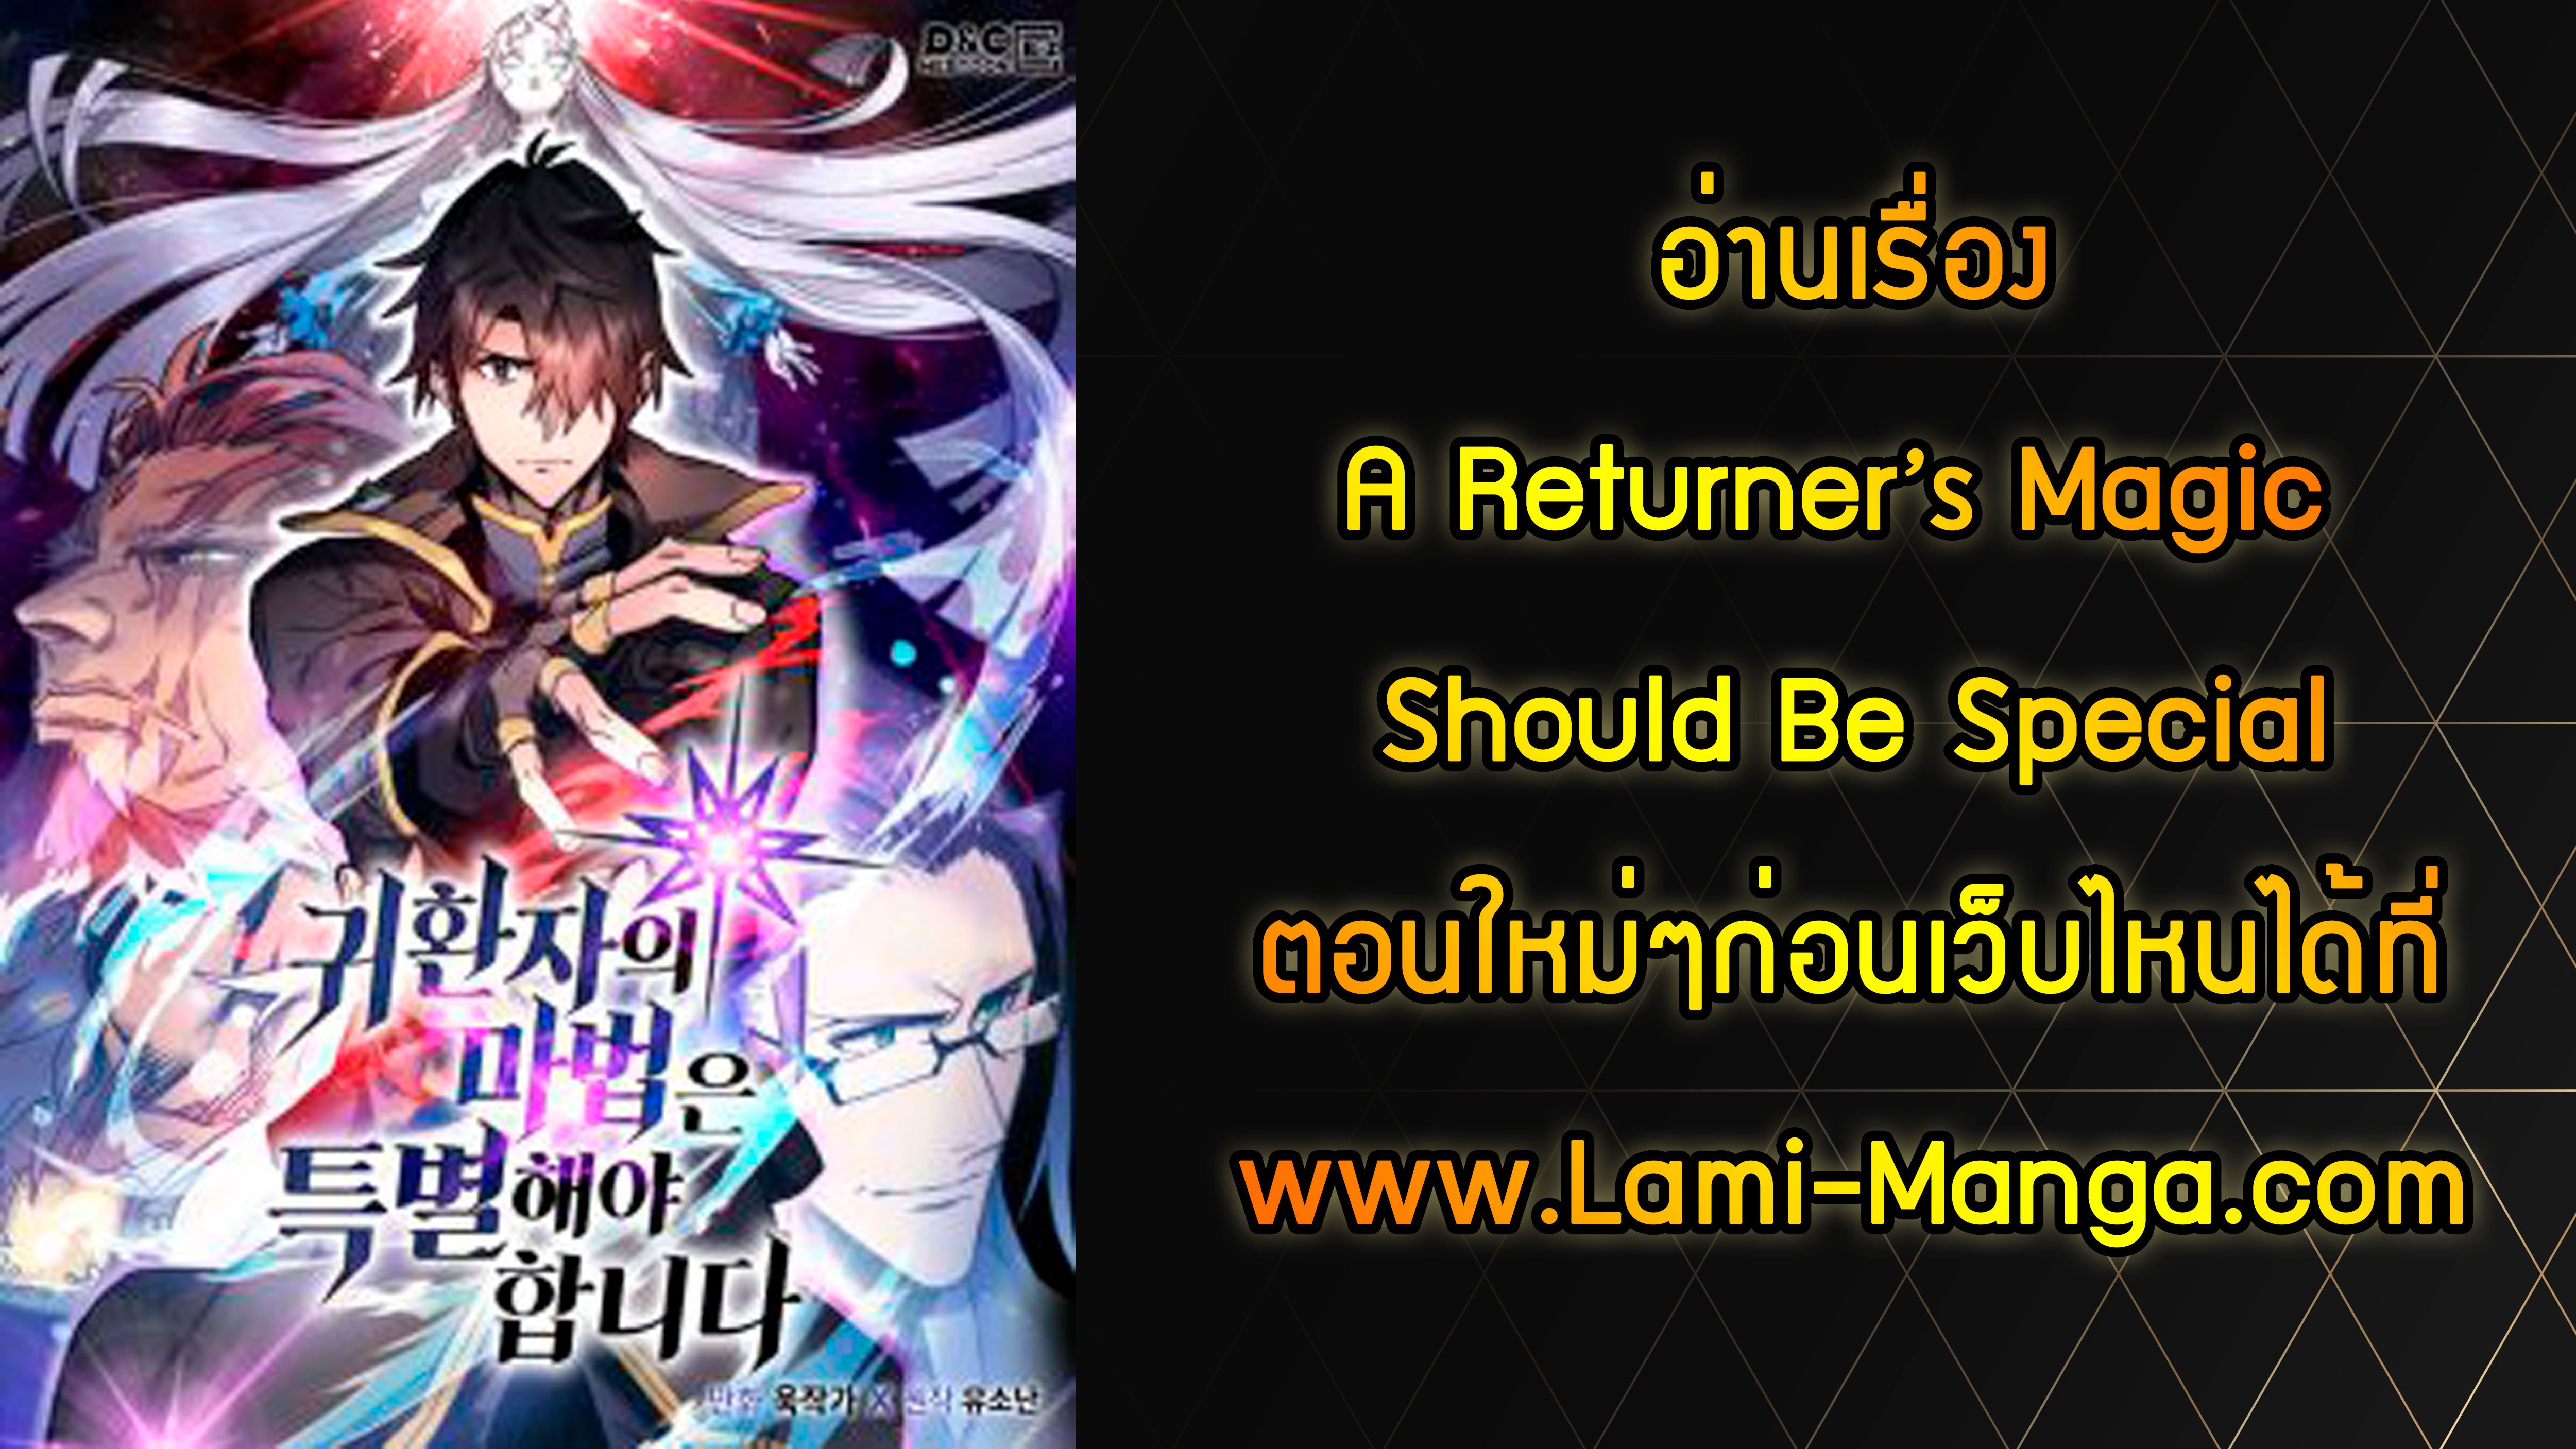 A Returner’s Magic Should Be Special110 09